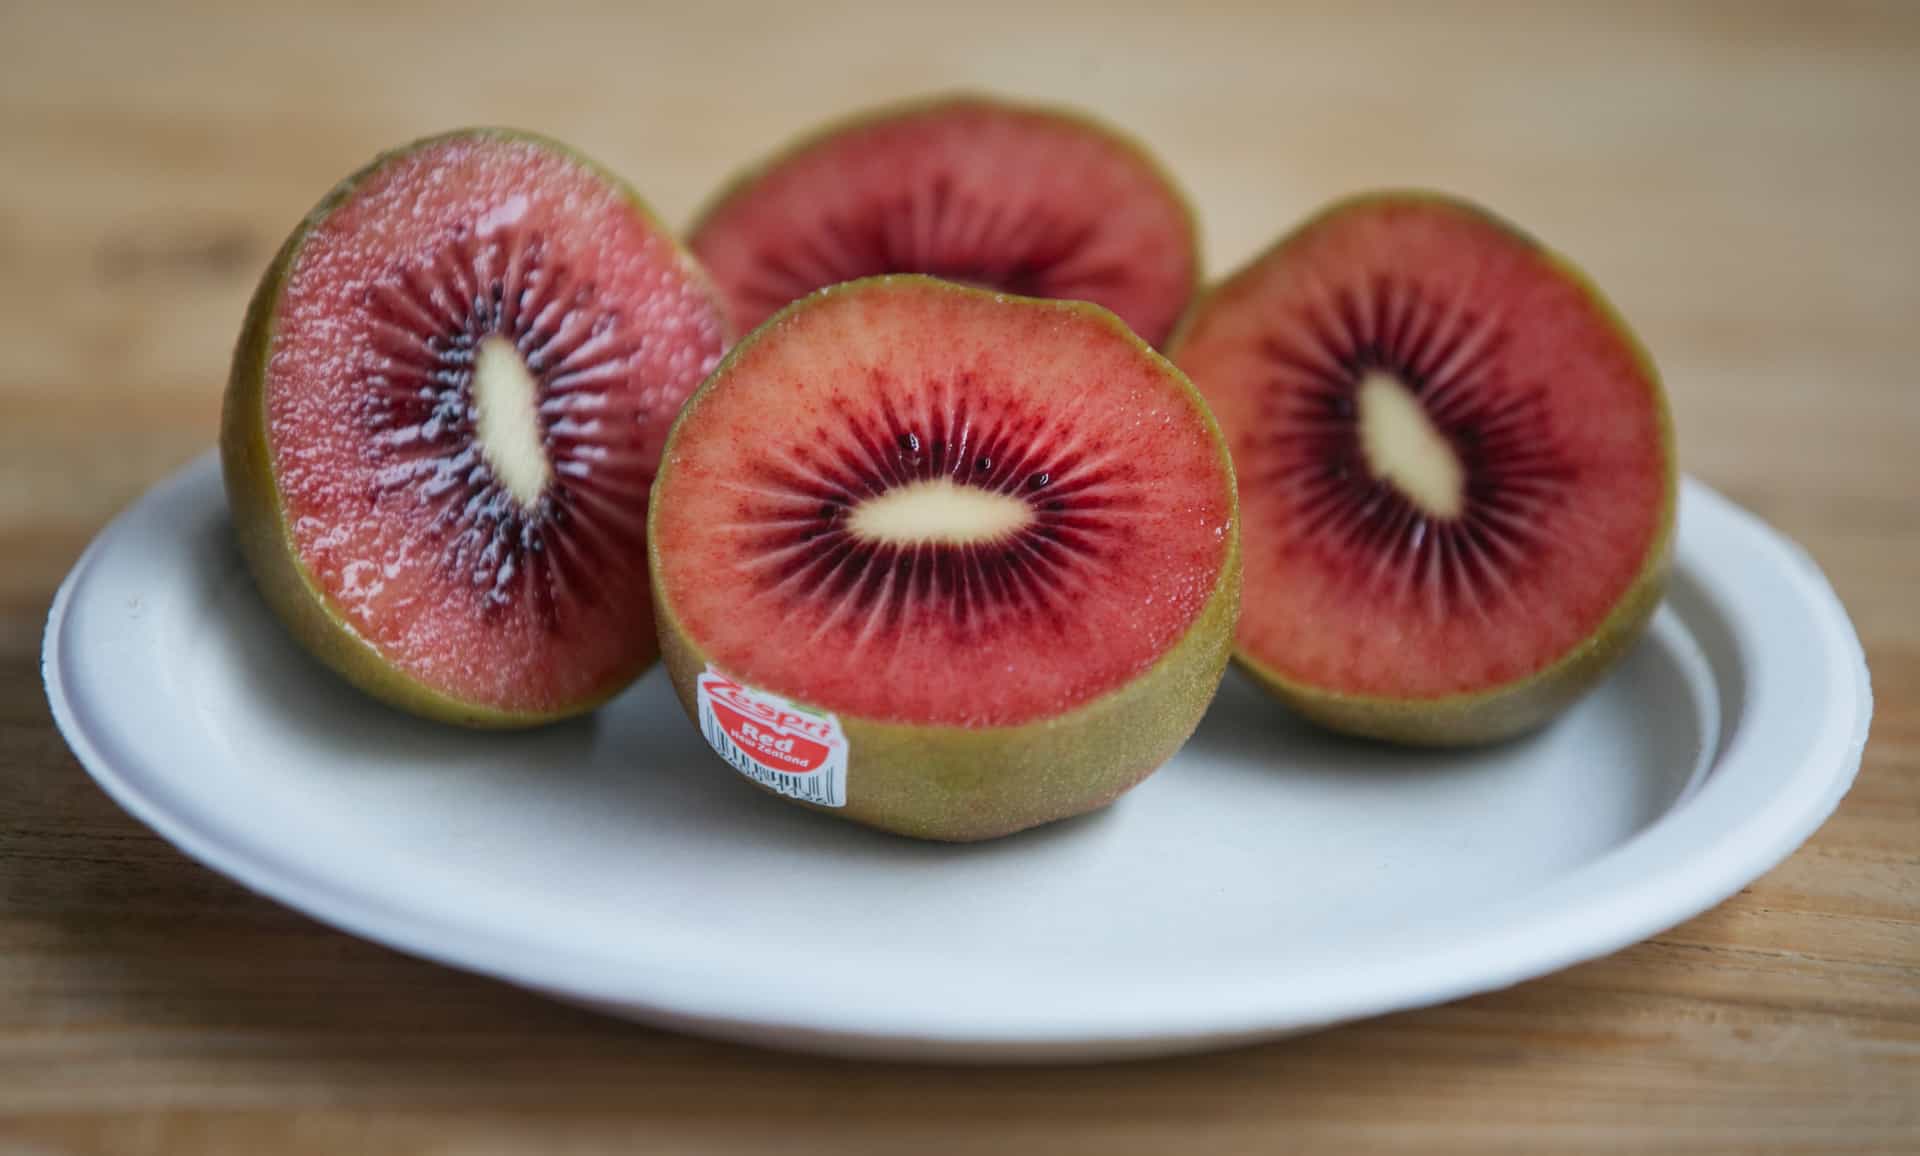  Ruby Kiwi Fruit (Red Kiwi) Sweet Fruit with Vitamin C 